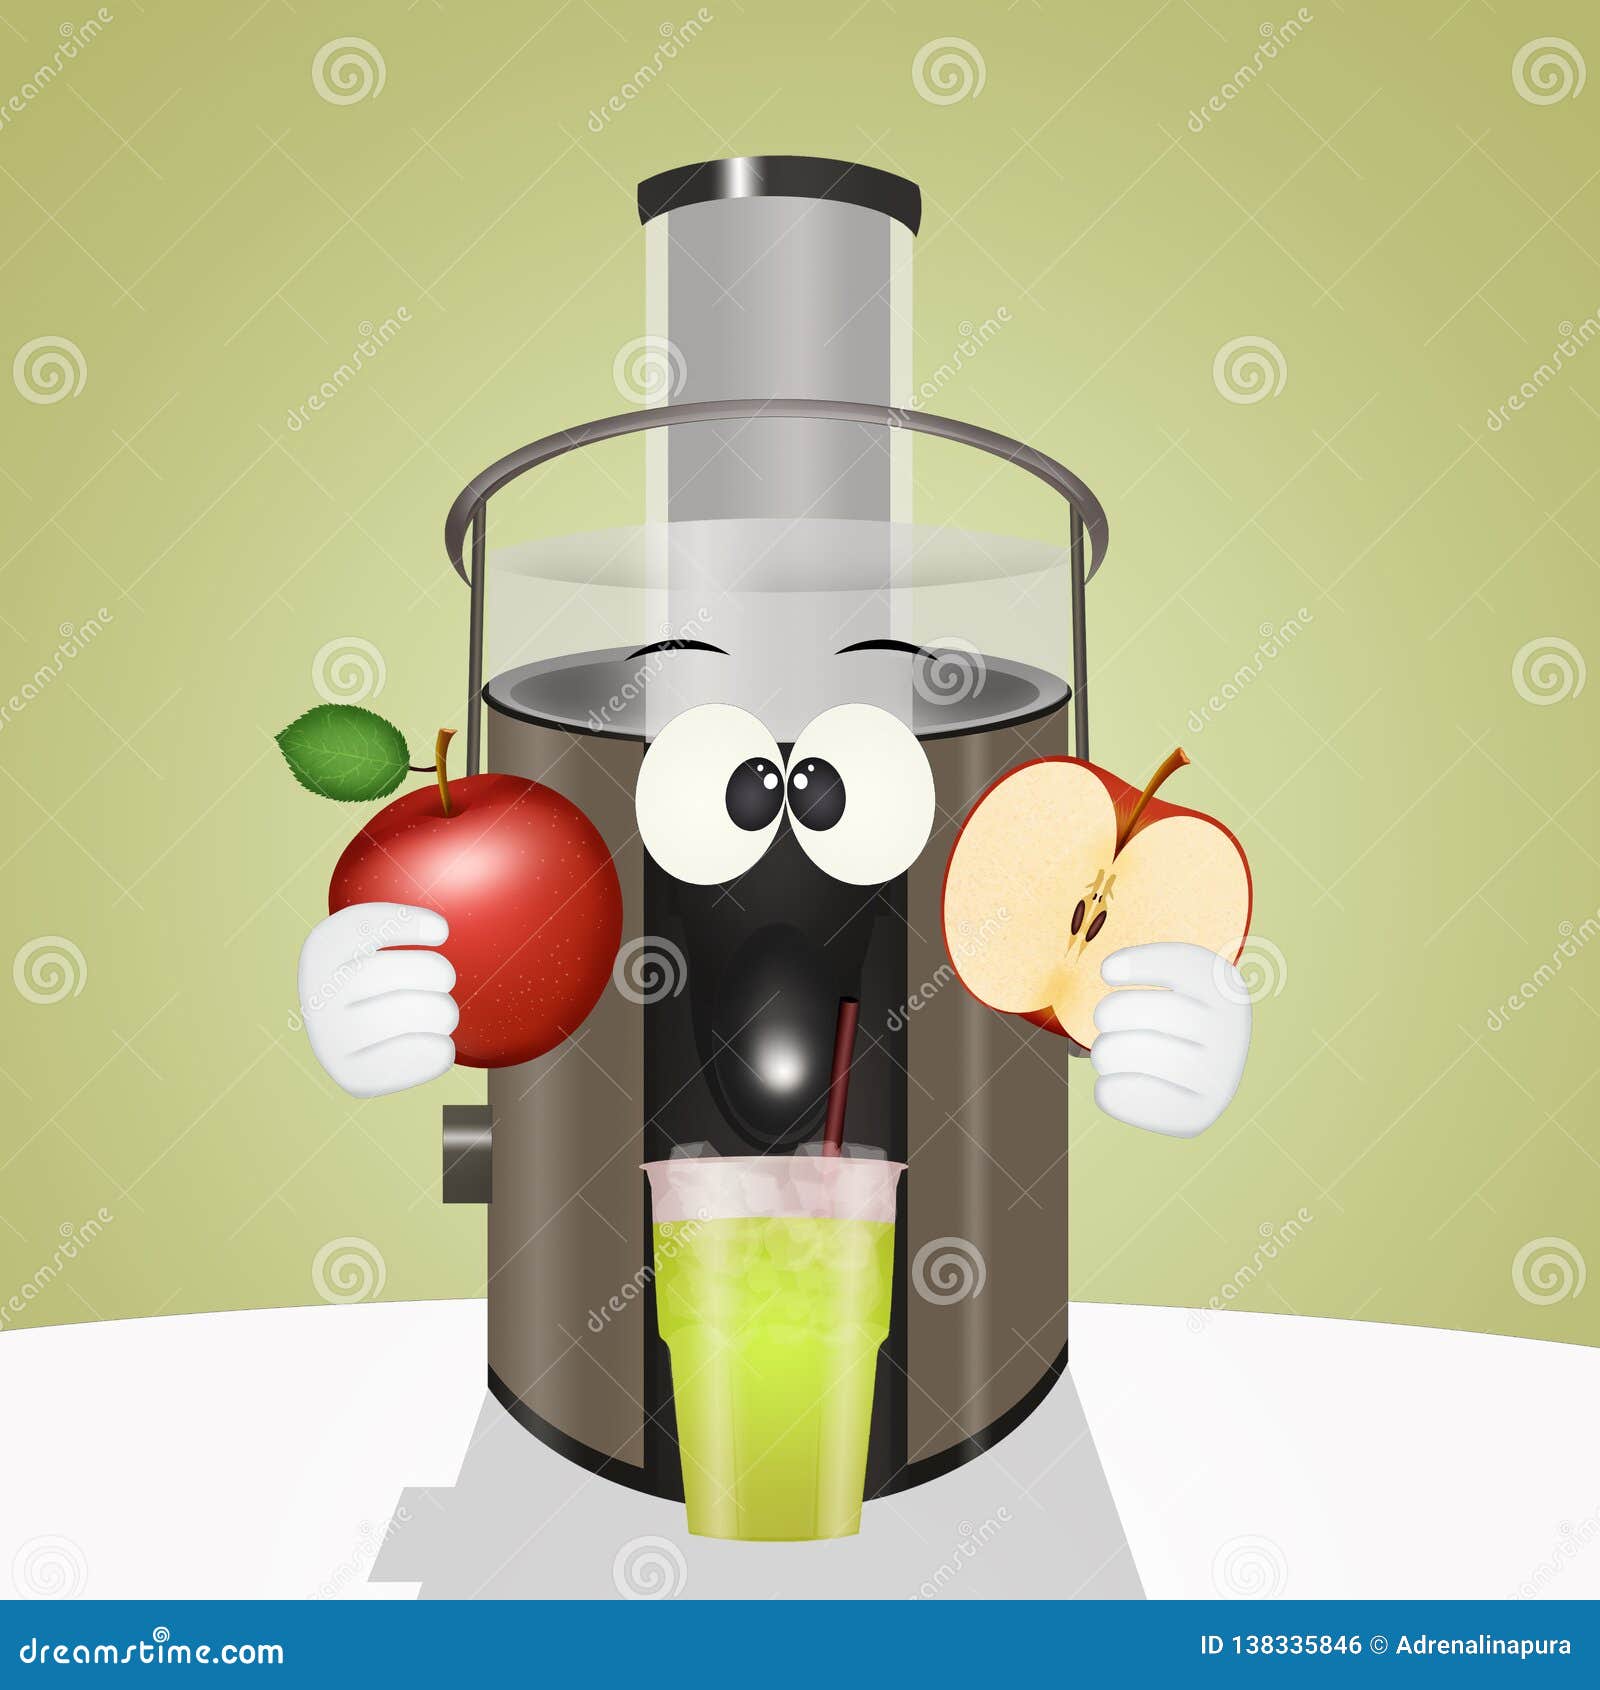 centrifuged apple fruit